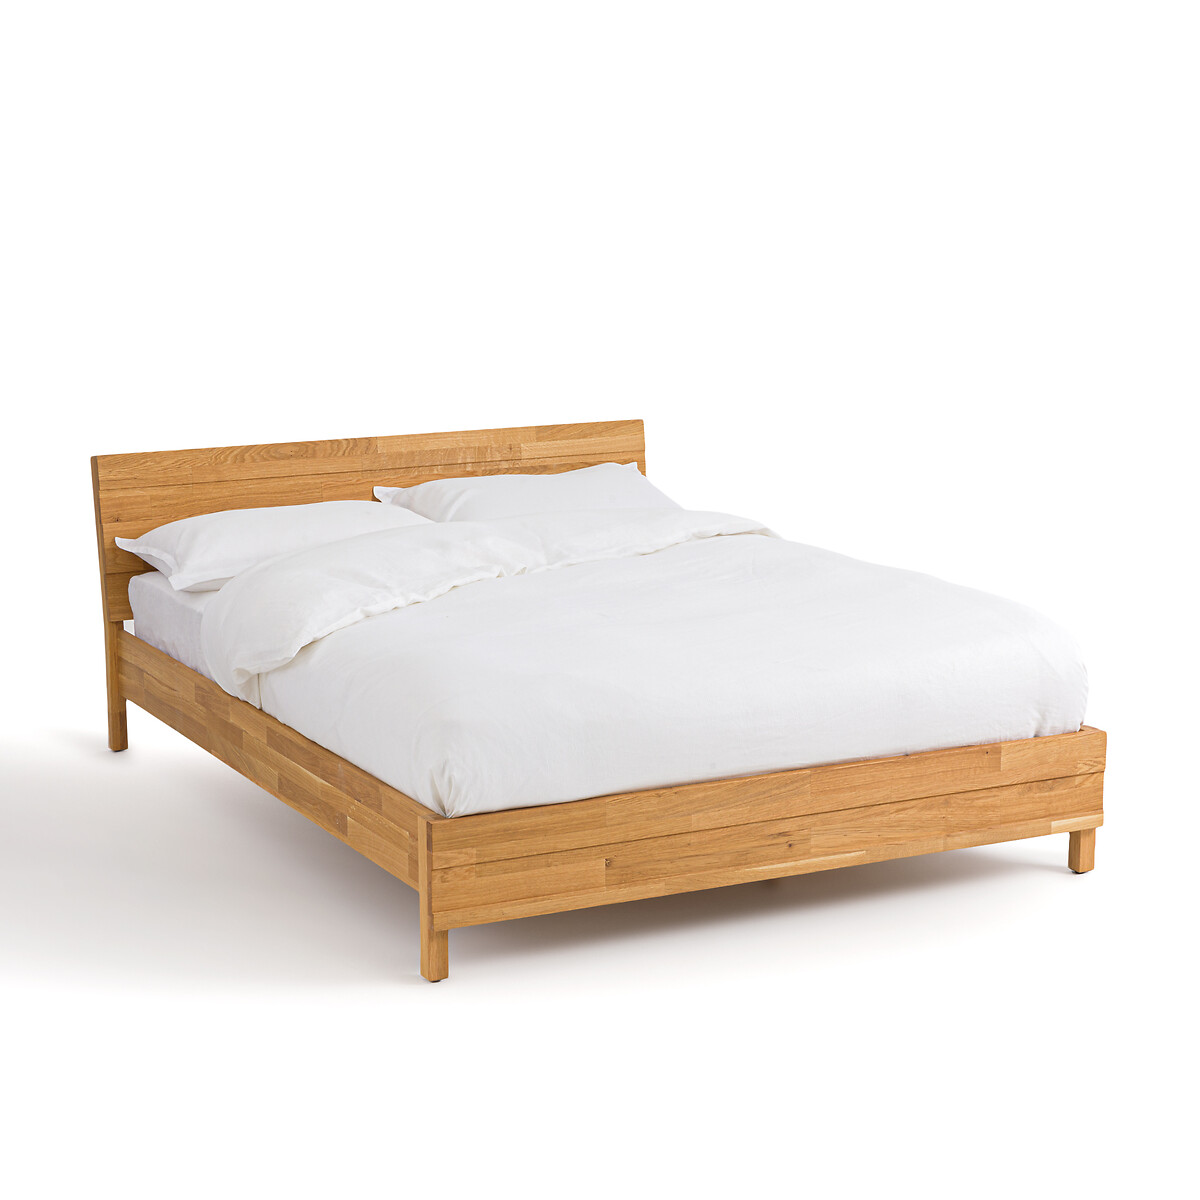 Кровать LaRedoute Кровать Из массива дуба с соединением встык Ariles 140 x 190 см желтый